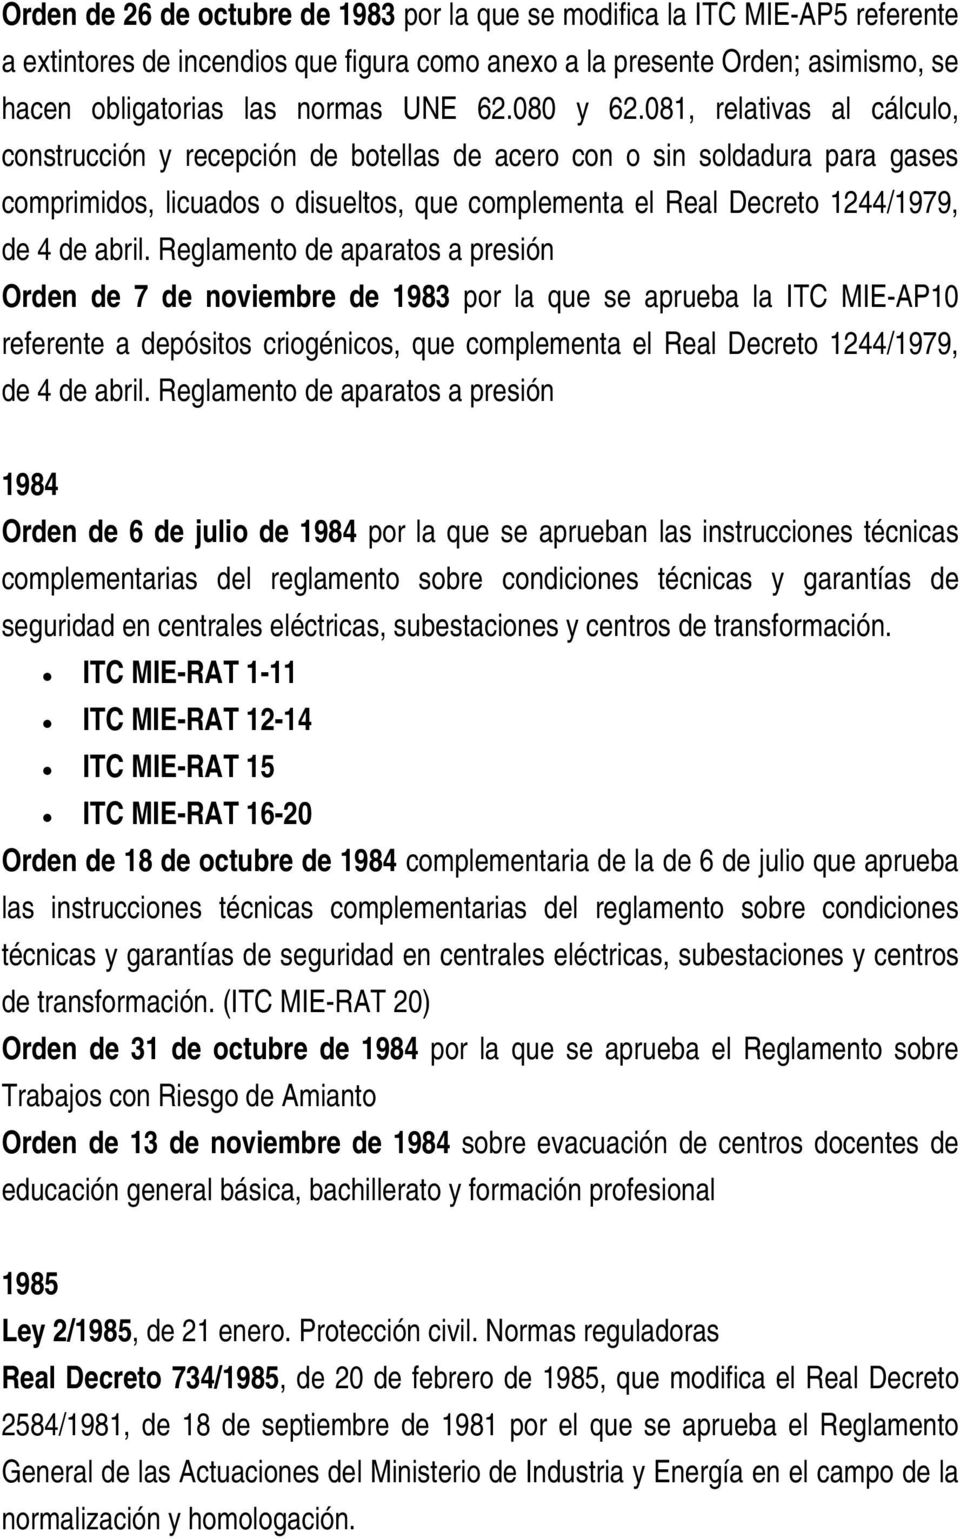 081, relativas al cálculo, construcción y recepción de botellas de acero con o sin soldadura para gases comprimidos, licuados o disueltos, que complementa el Real Decreto 1244/1979, de 4 de abril.